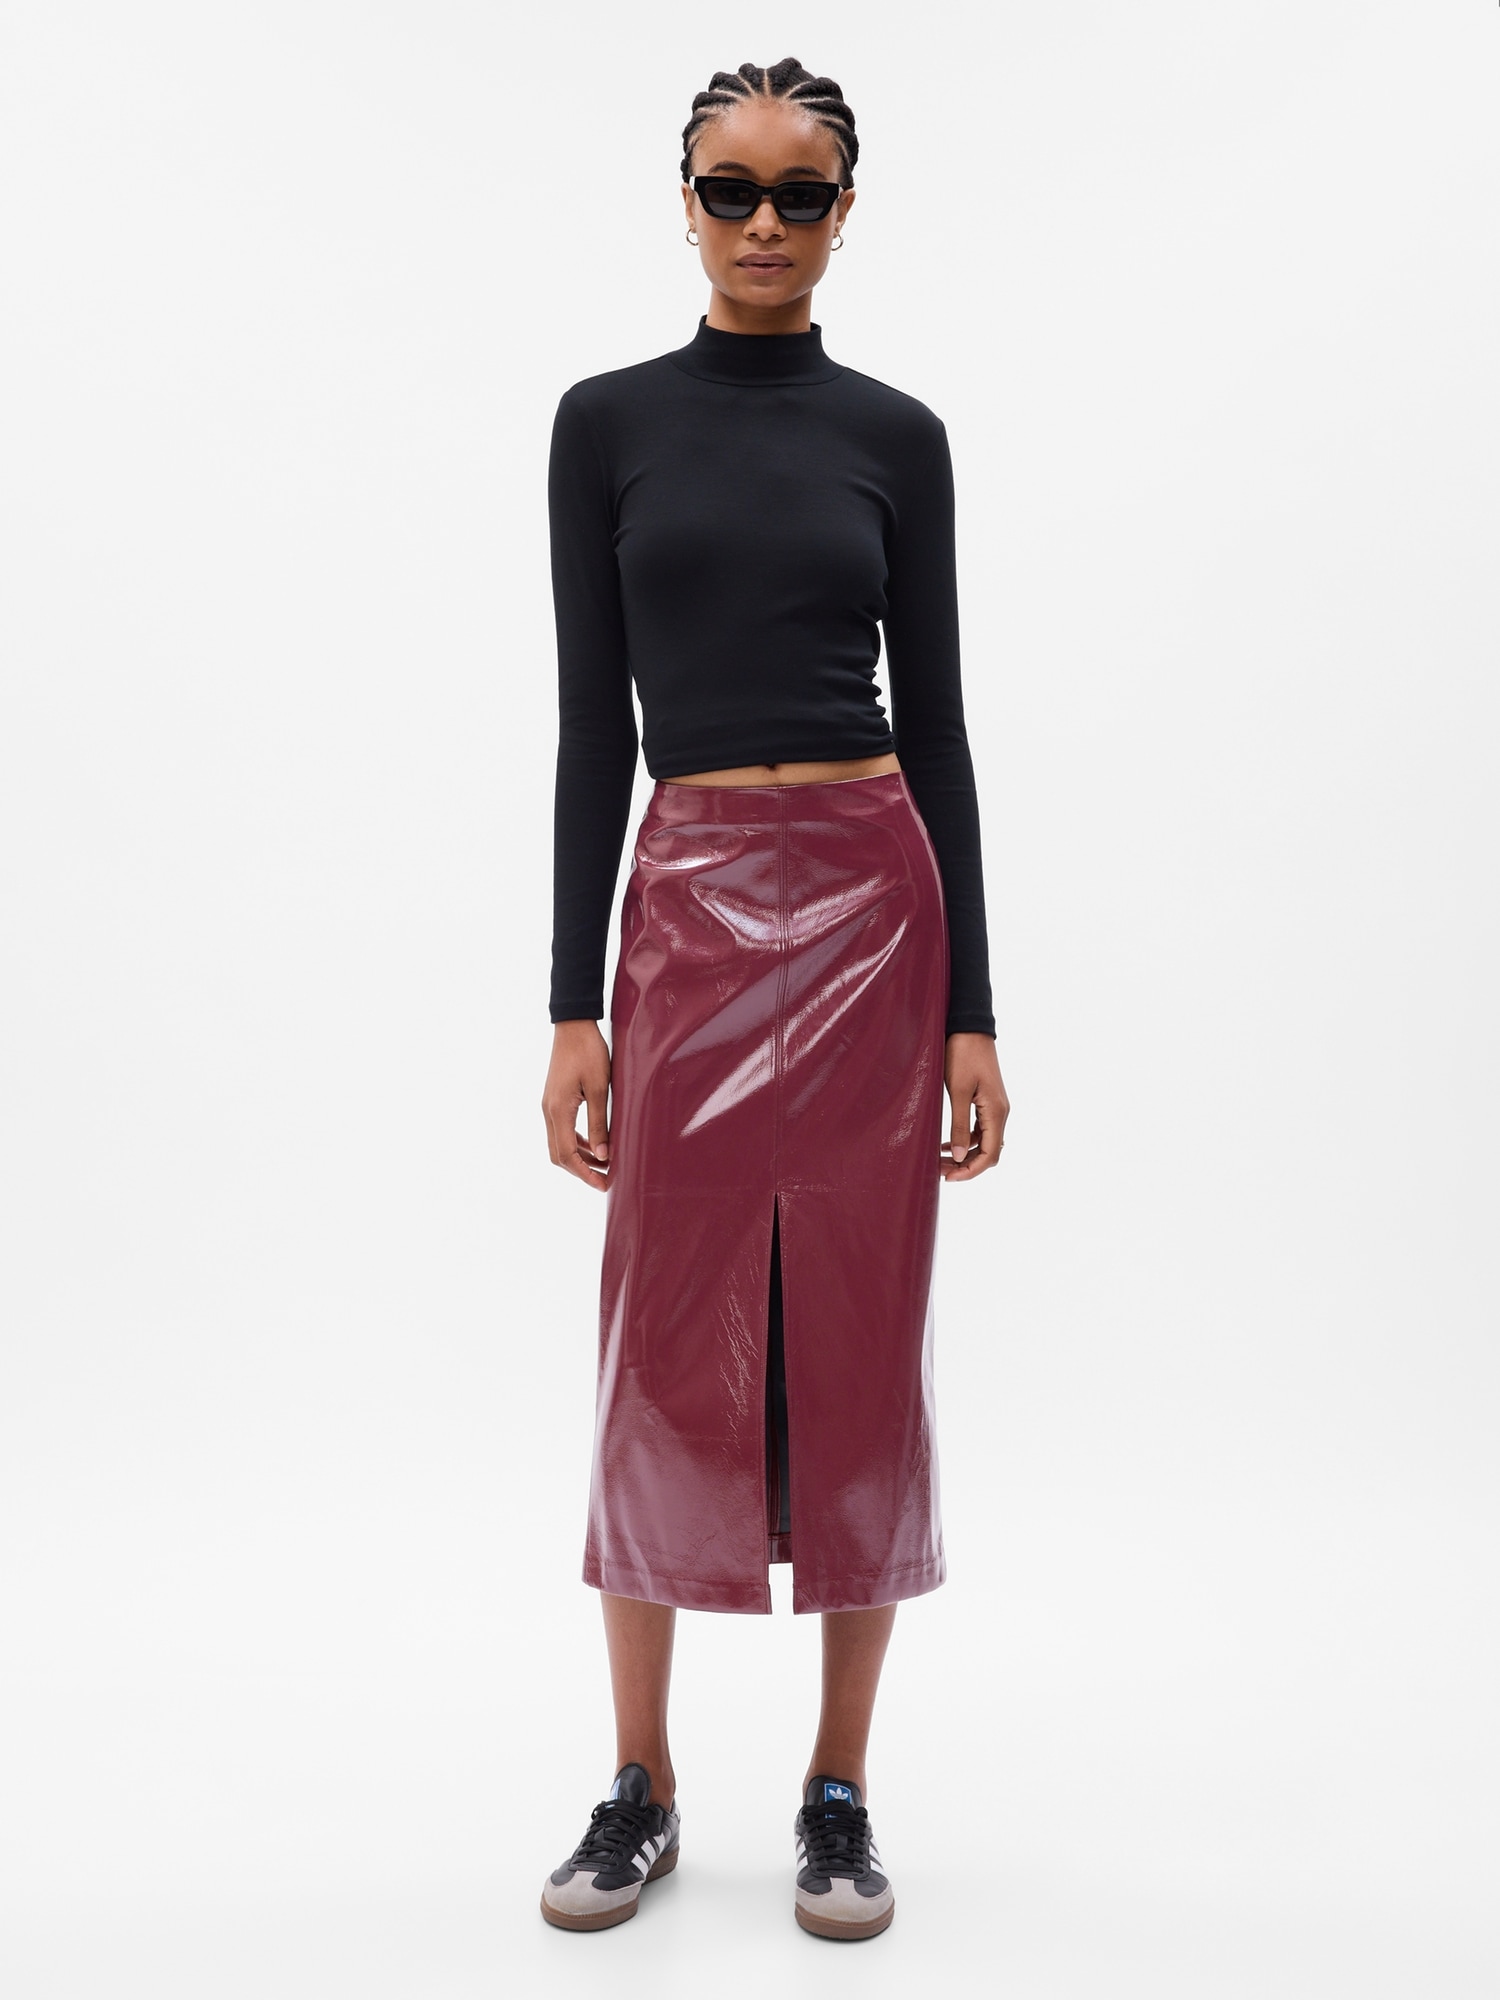 Gigi Faux Leather Midi Skirt Greys